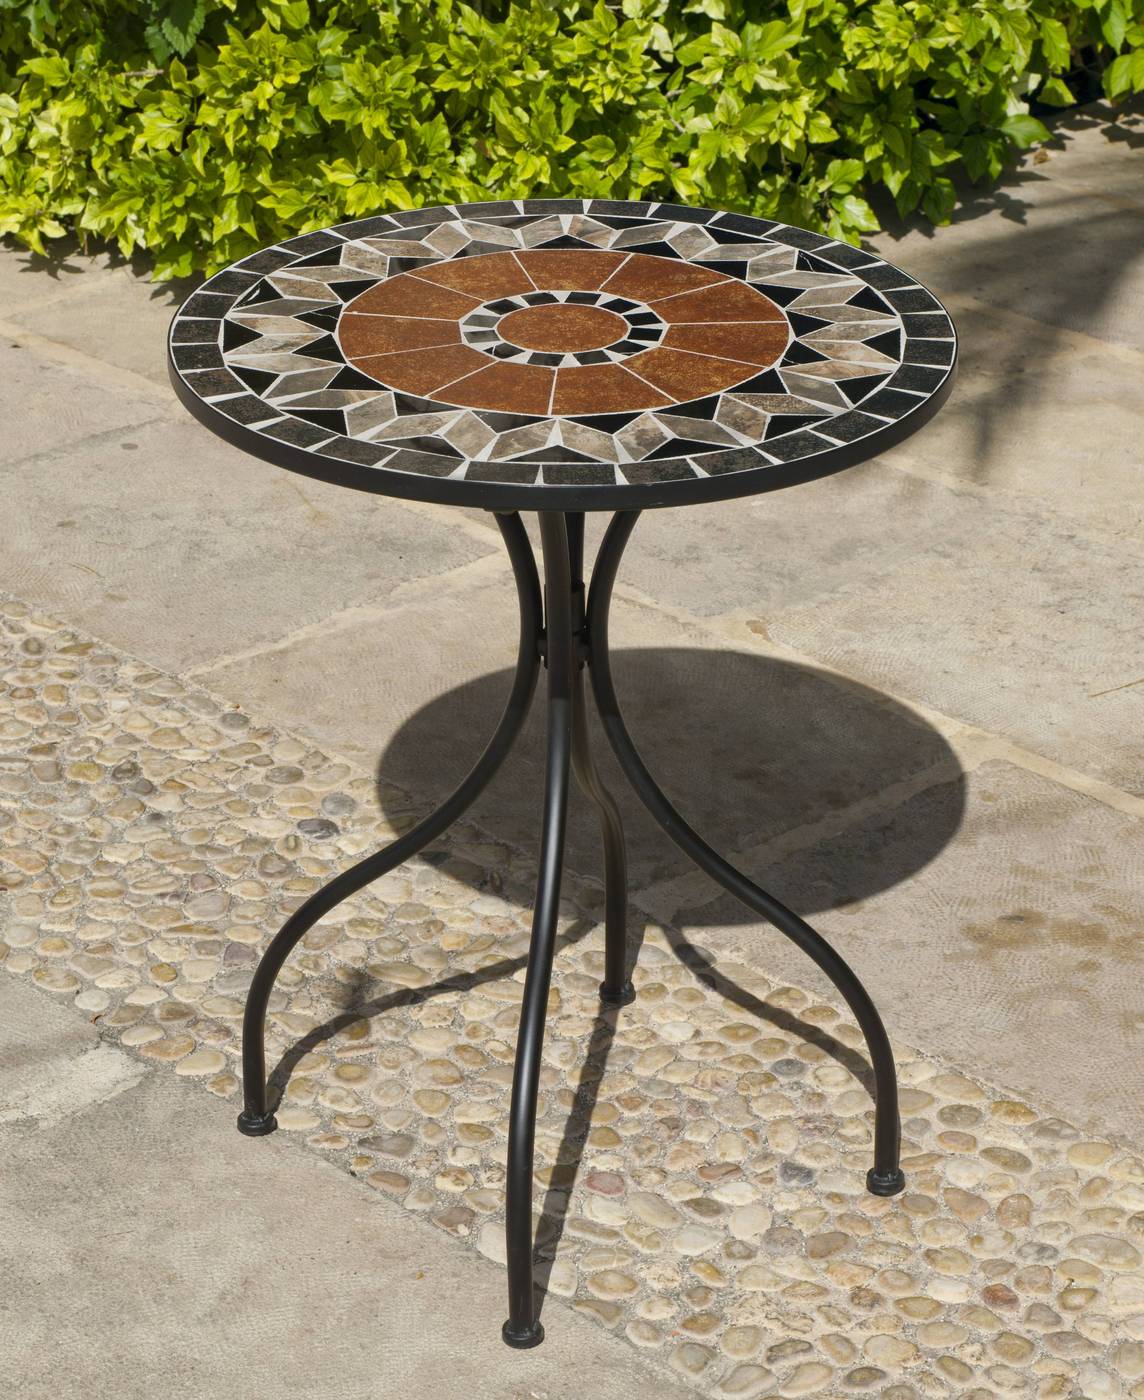 Set Mosaico Toscana-Santana - Conjunto de acero forjado color gris: mesa redonda con tablero mosaico de 60 cm. + 2 sillones apilables de wicker